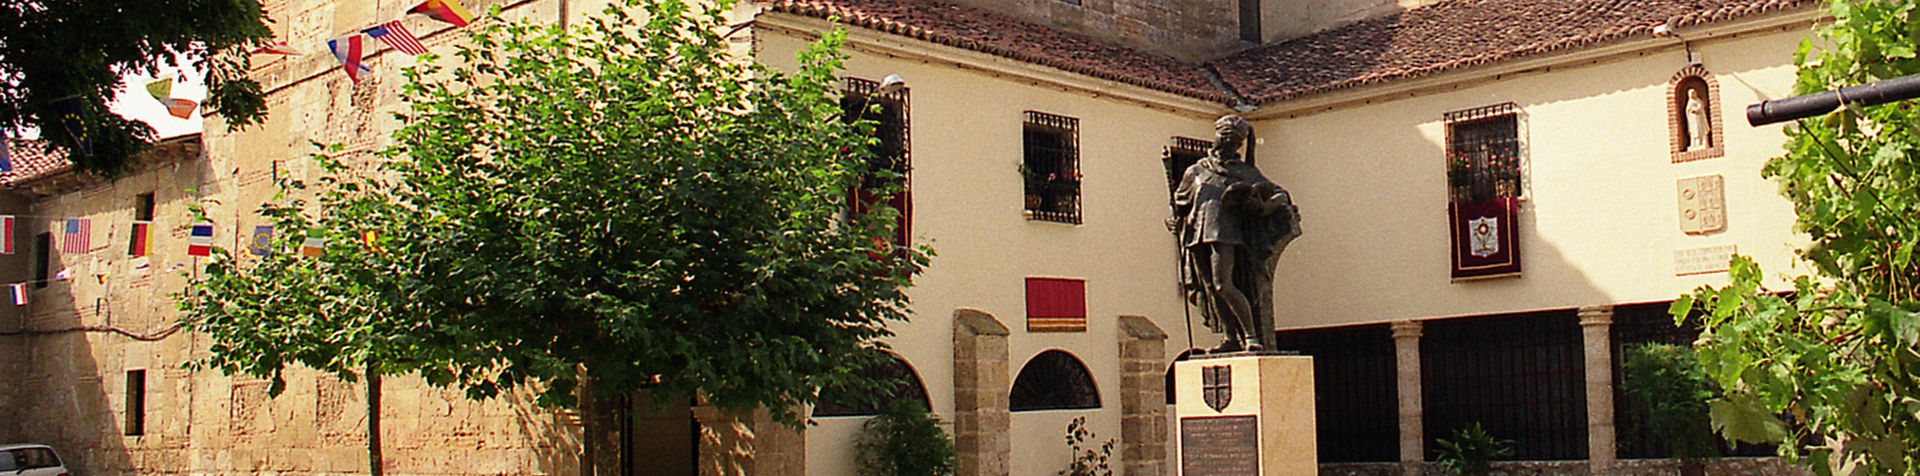 Monasterio Clarisas, Calabazanos